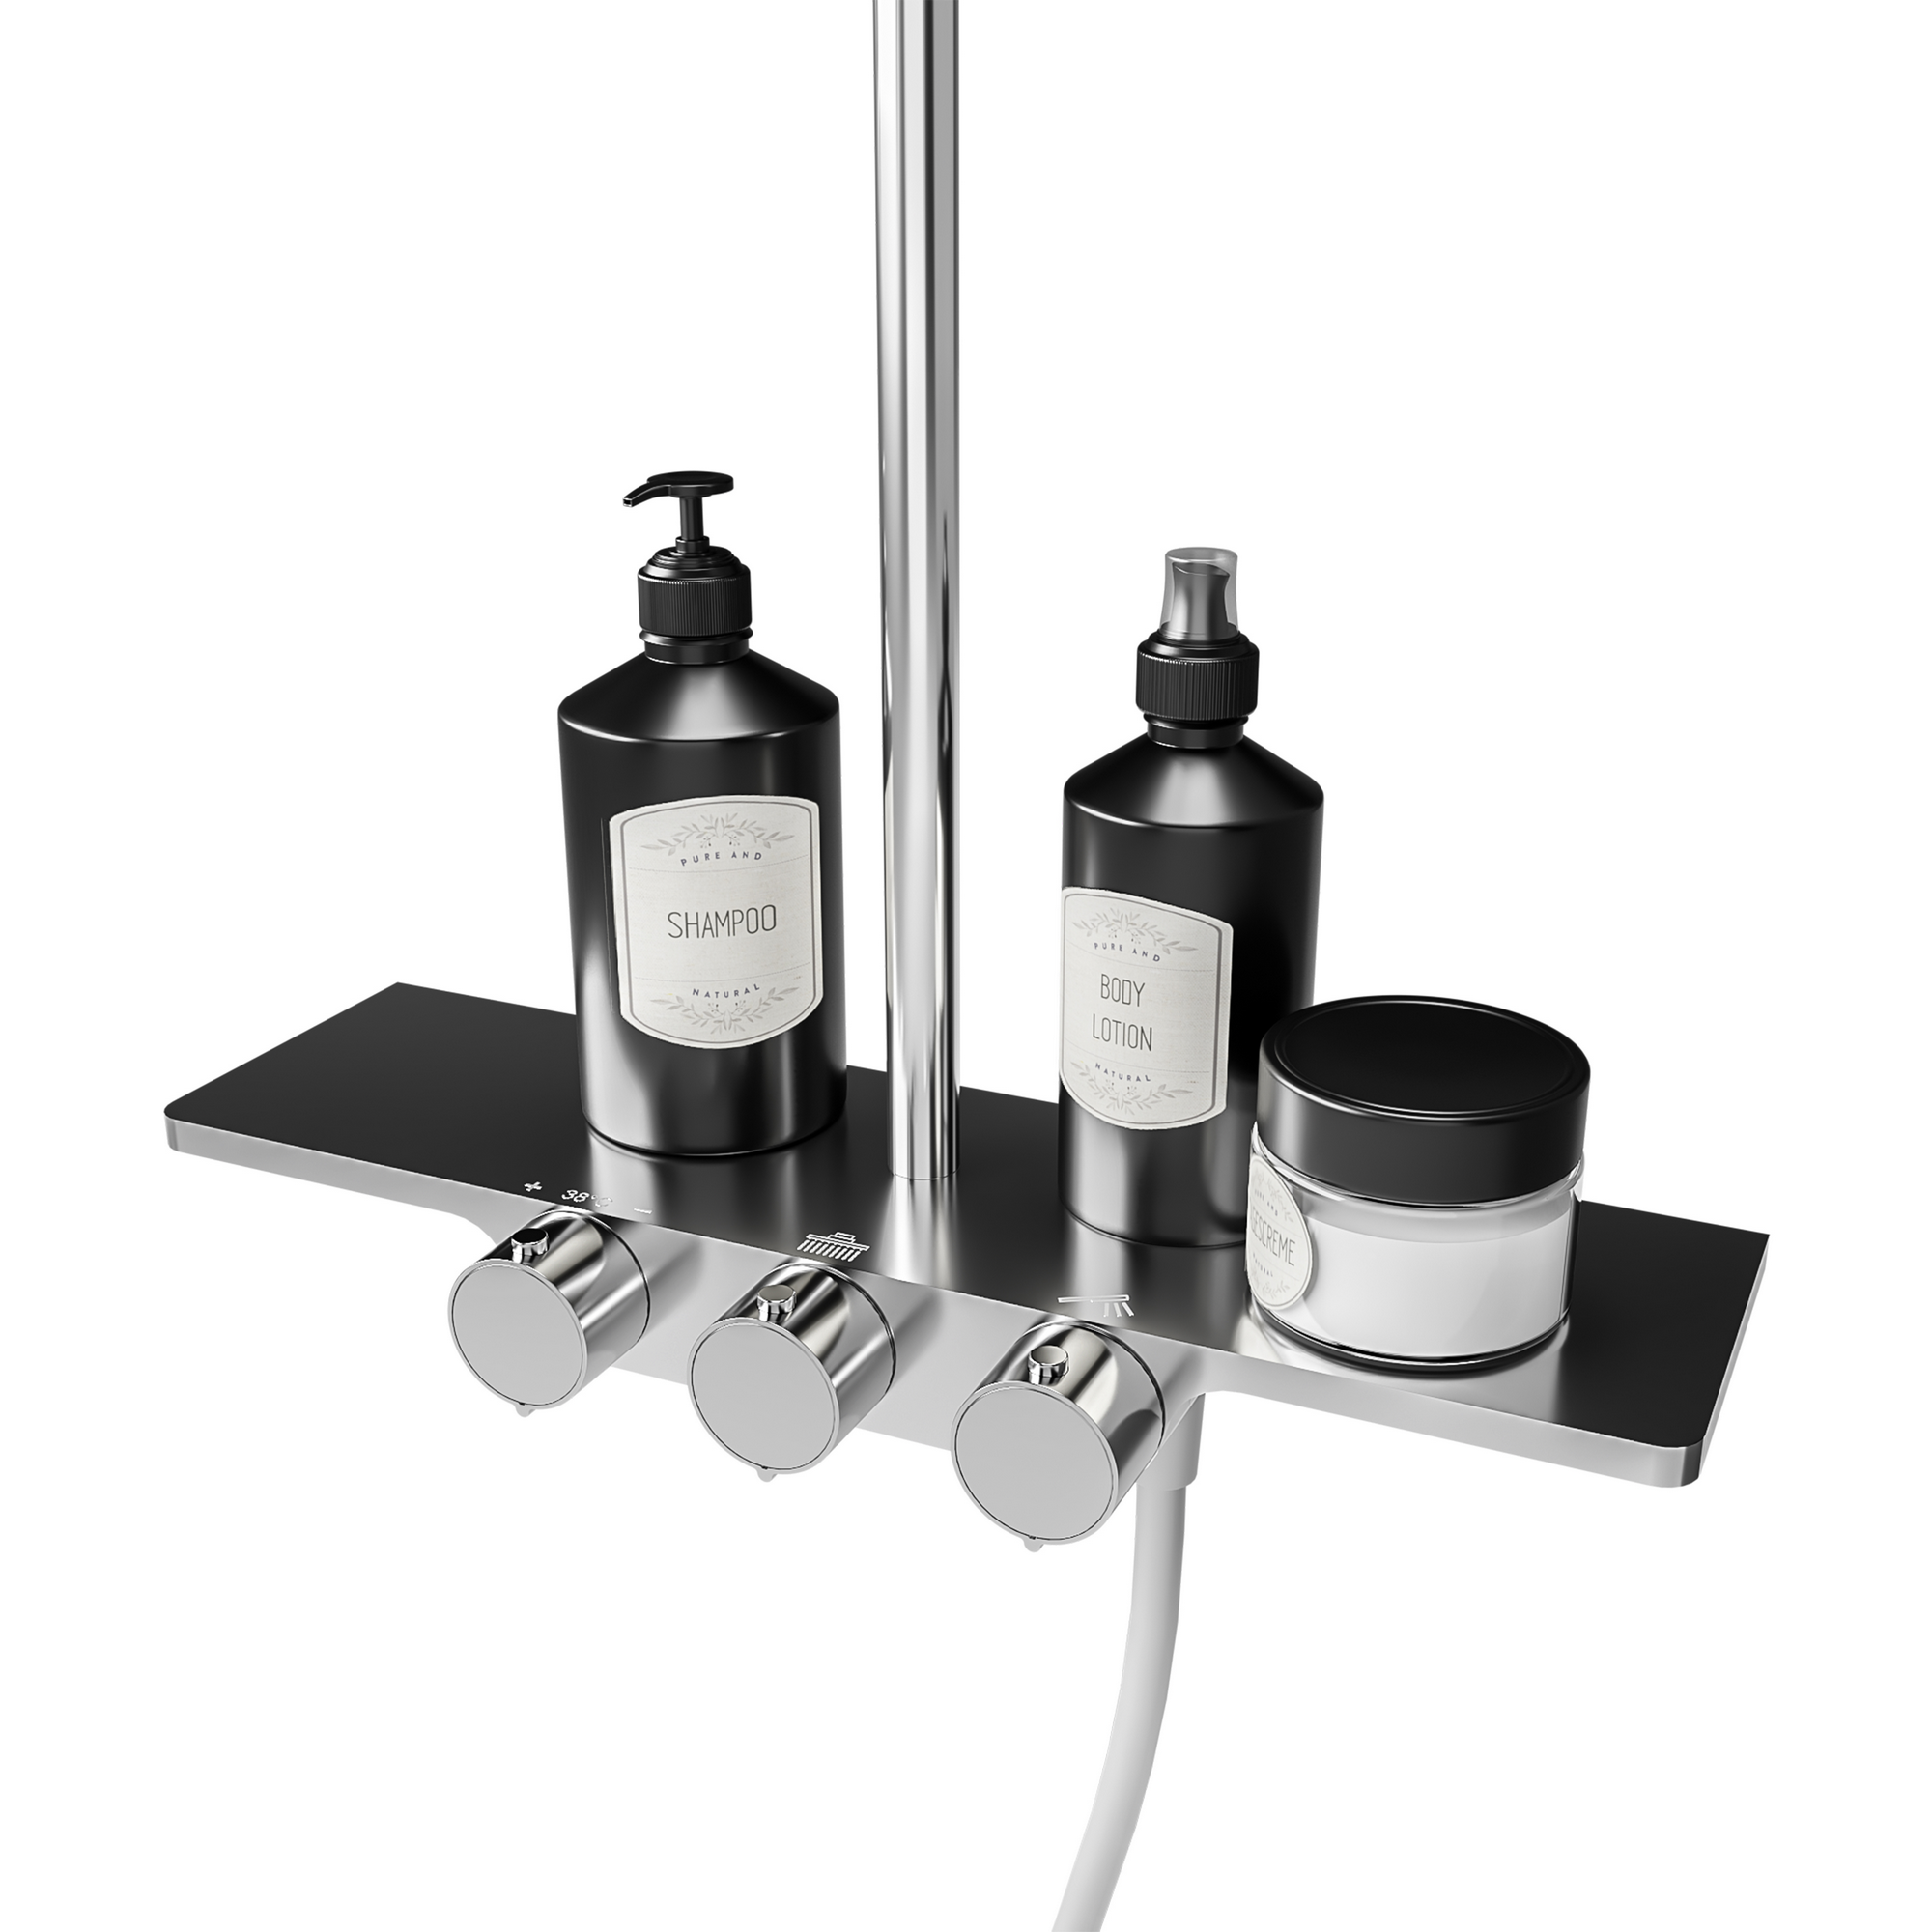 Duschsystem 'DuschMaster Rain III Modern' mit Thermostat und Ablage, rund, 111 cm + product picture